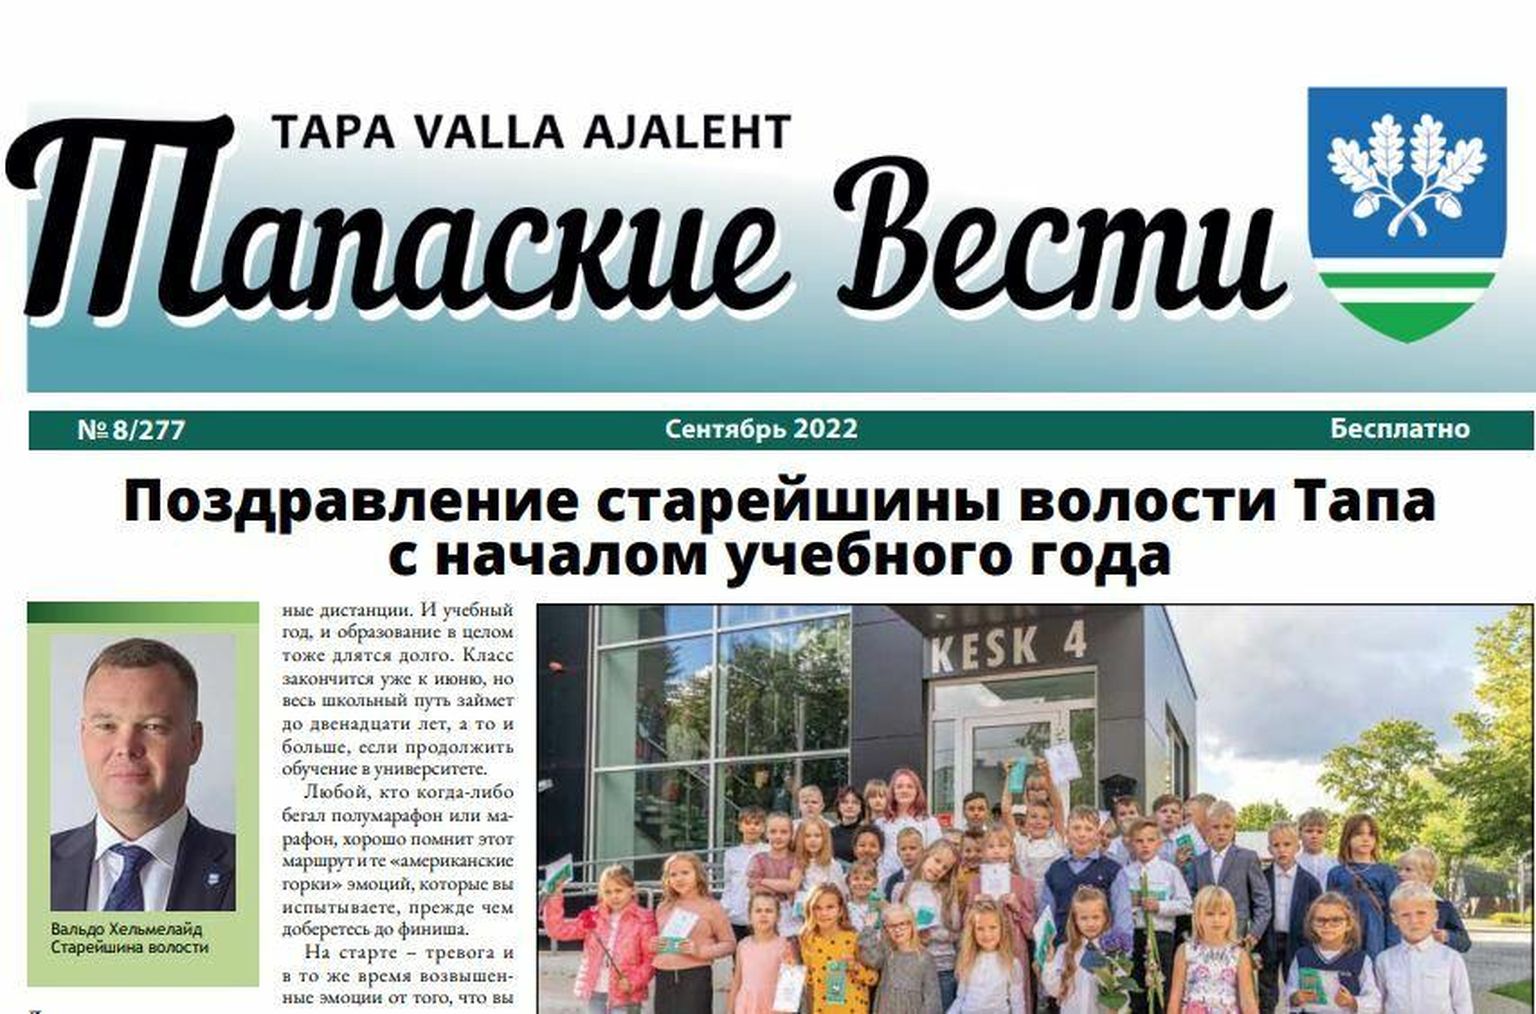 Tapa valla ajalehes on venekeelne tekst praegu lehekülgedel 11–16.